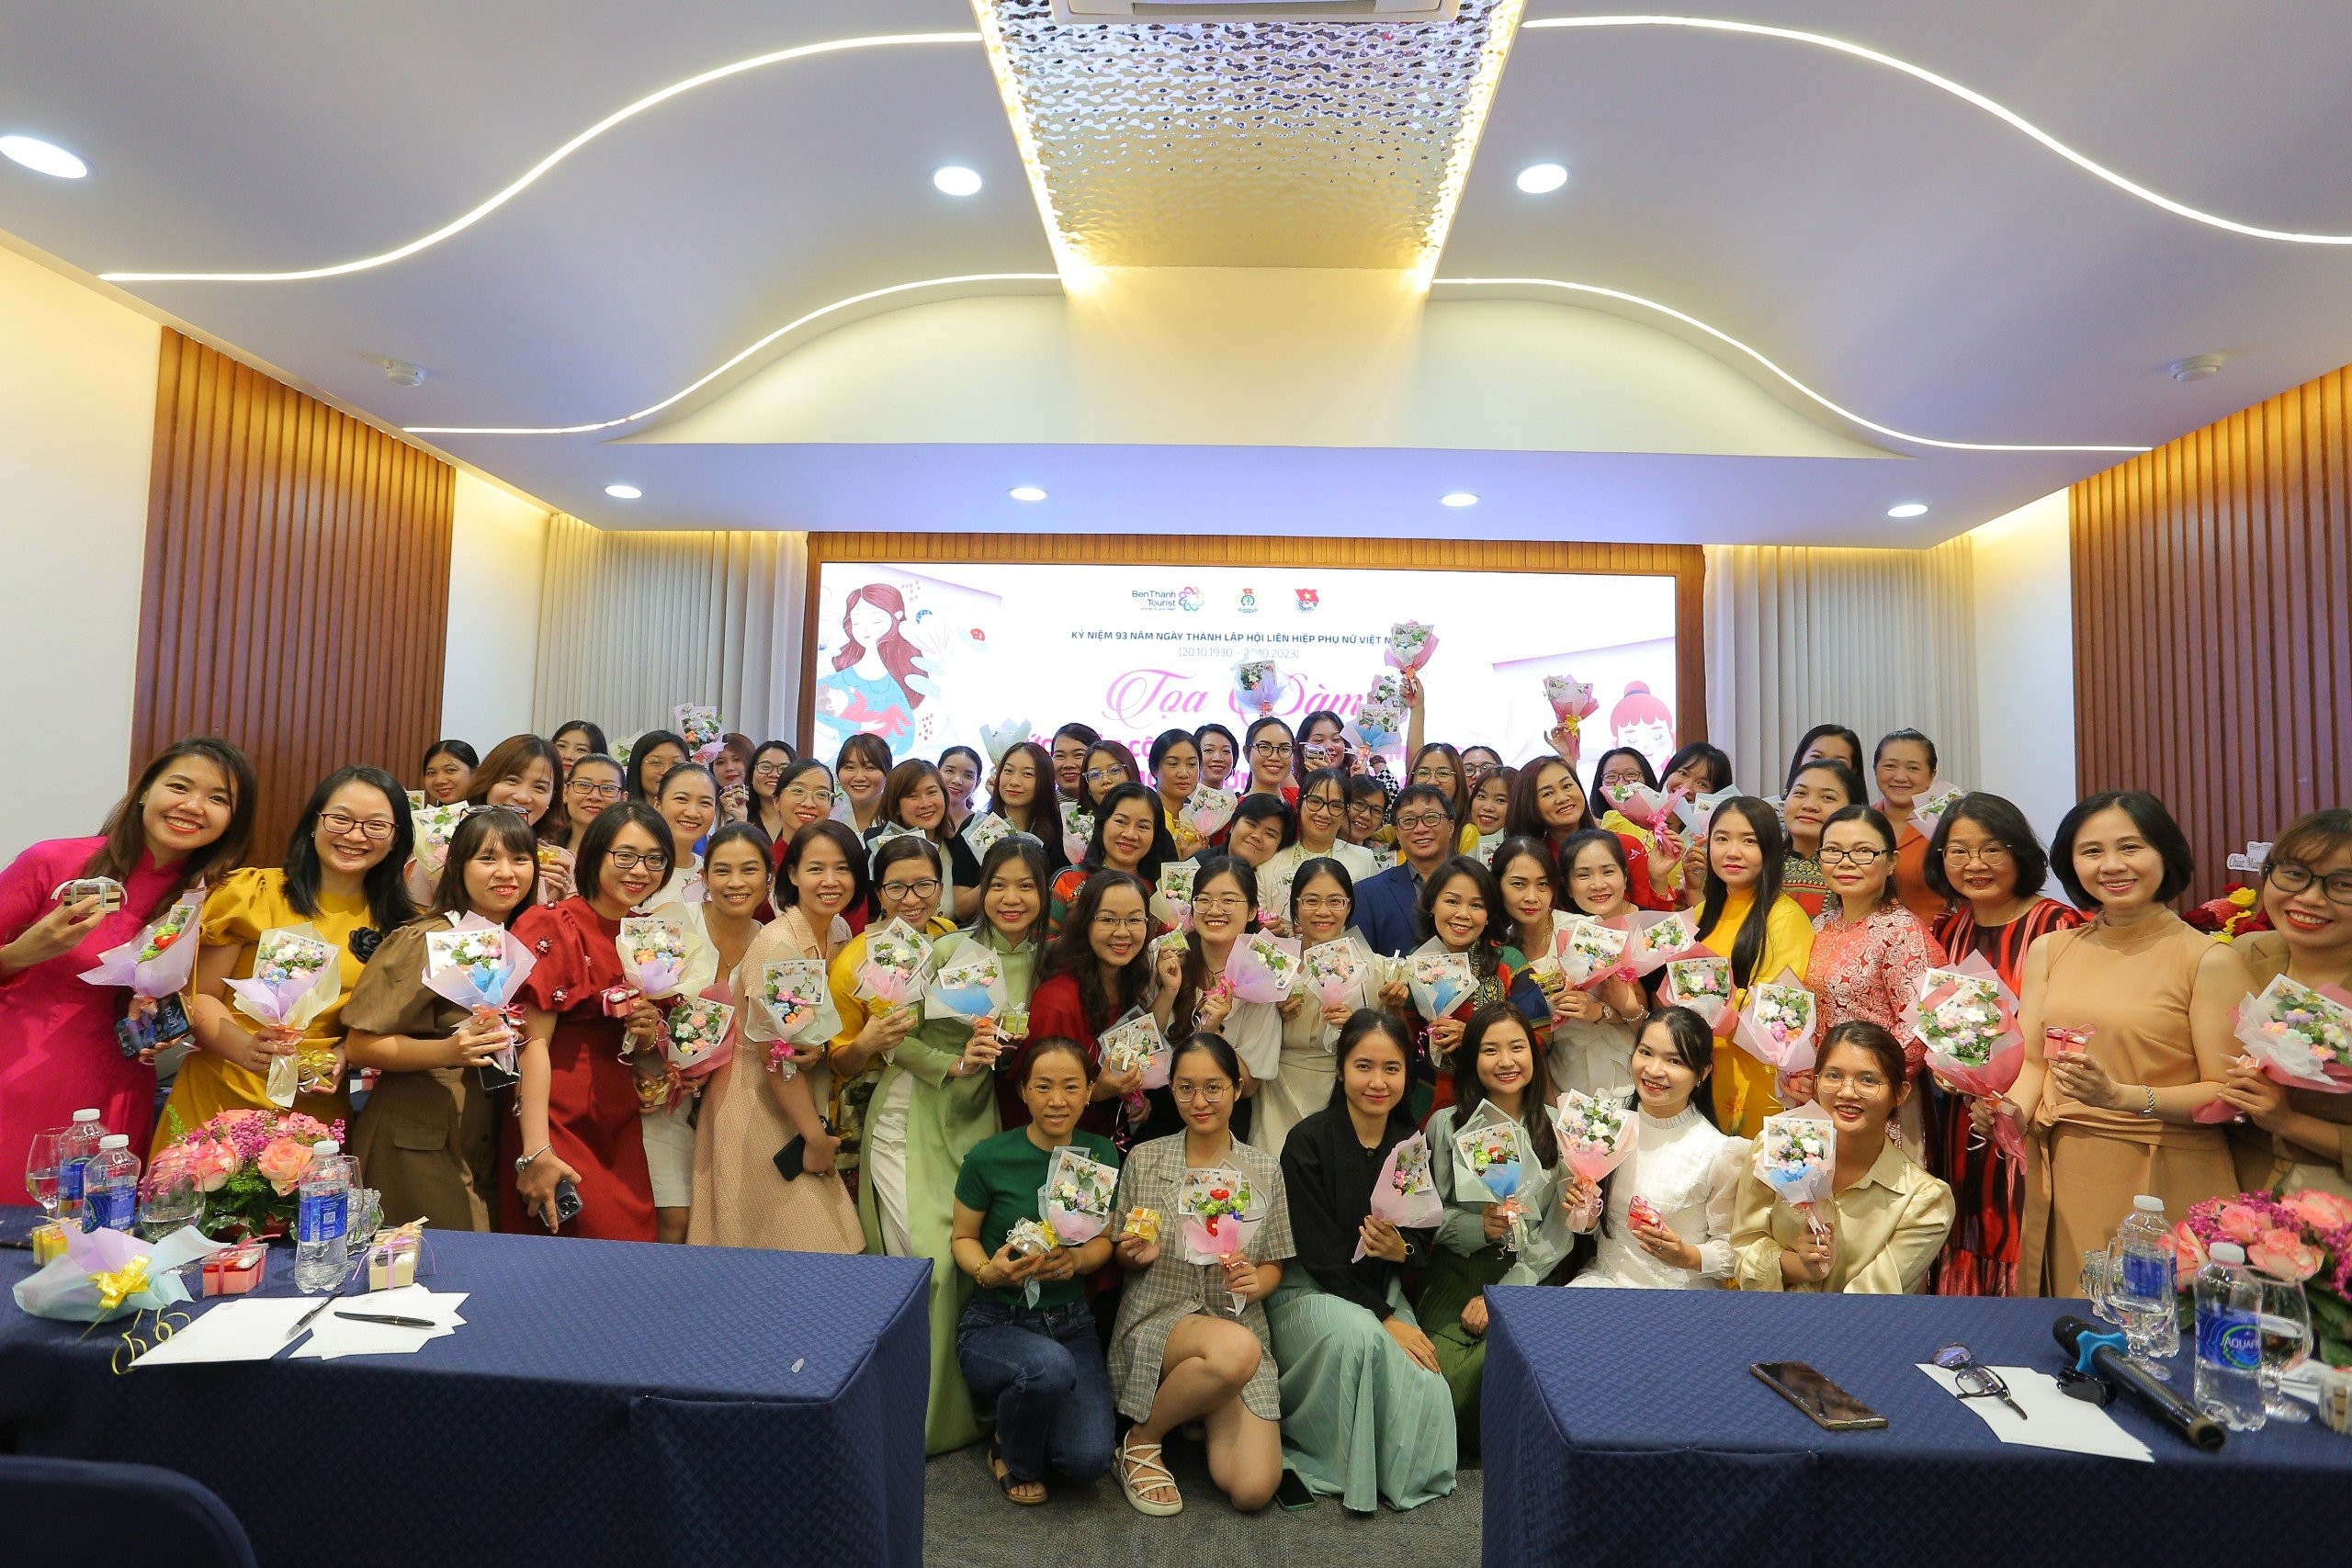 BenThanh Tourist tổ chức sự kiện chúc mừng Ngày phụ nữ Việt Nam 